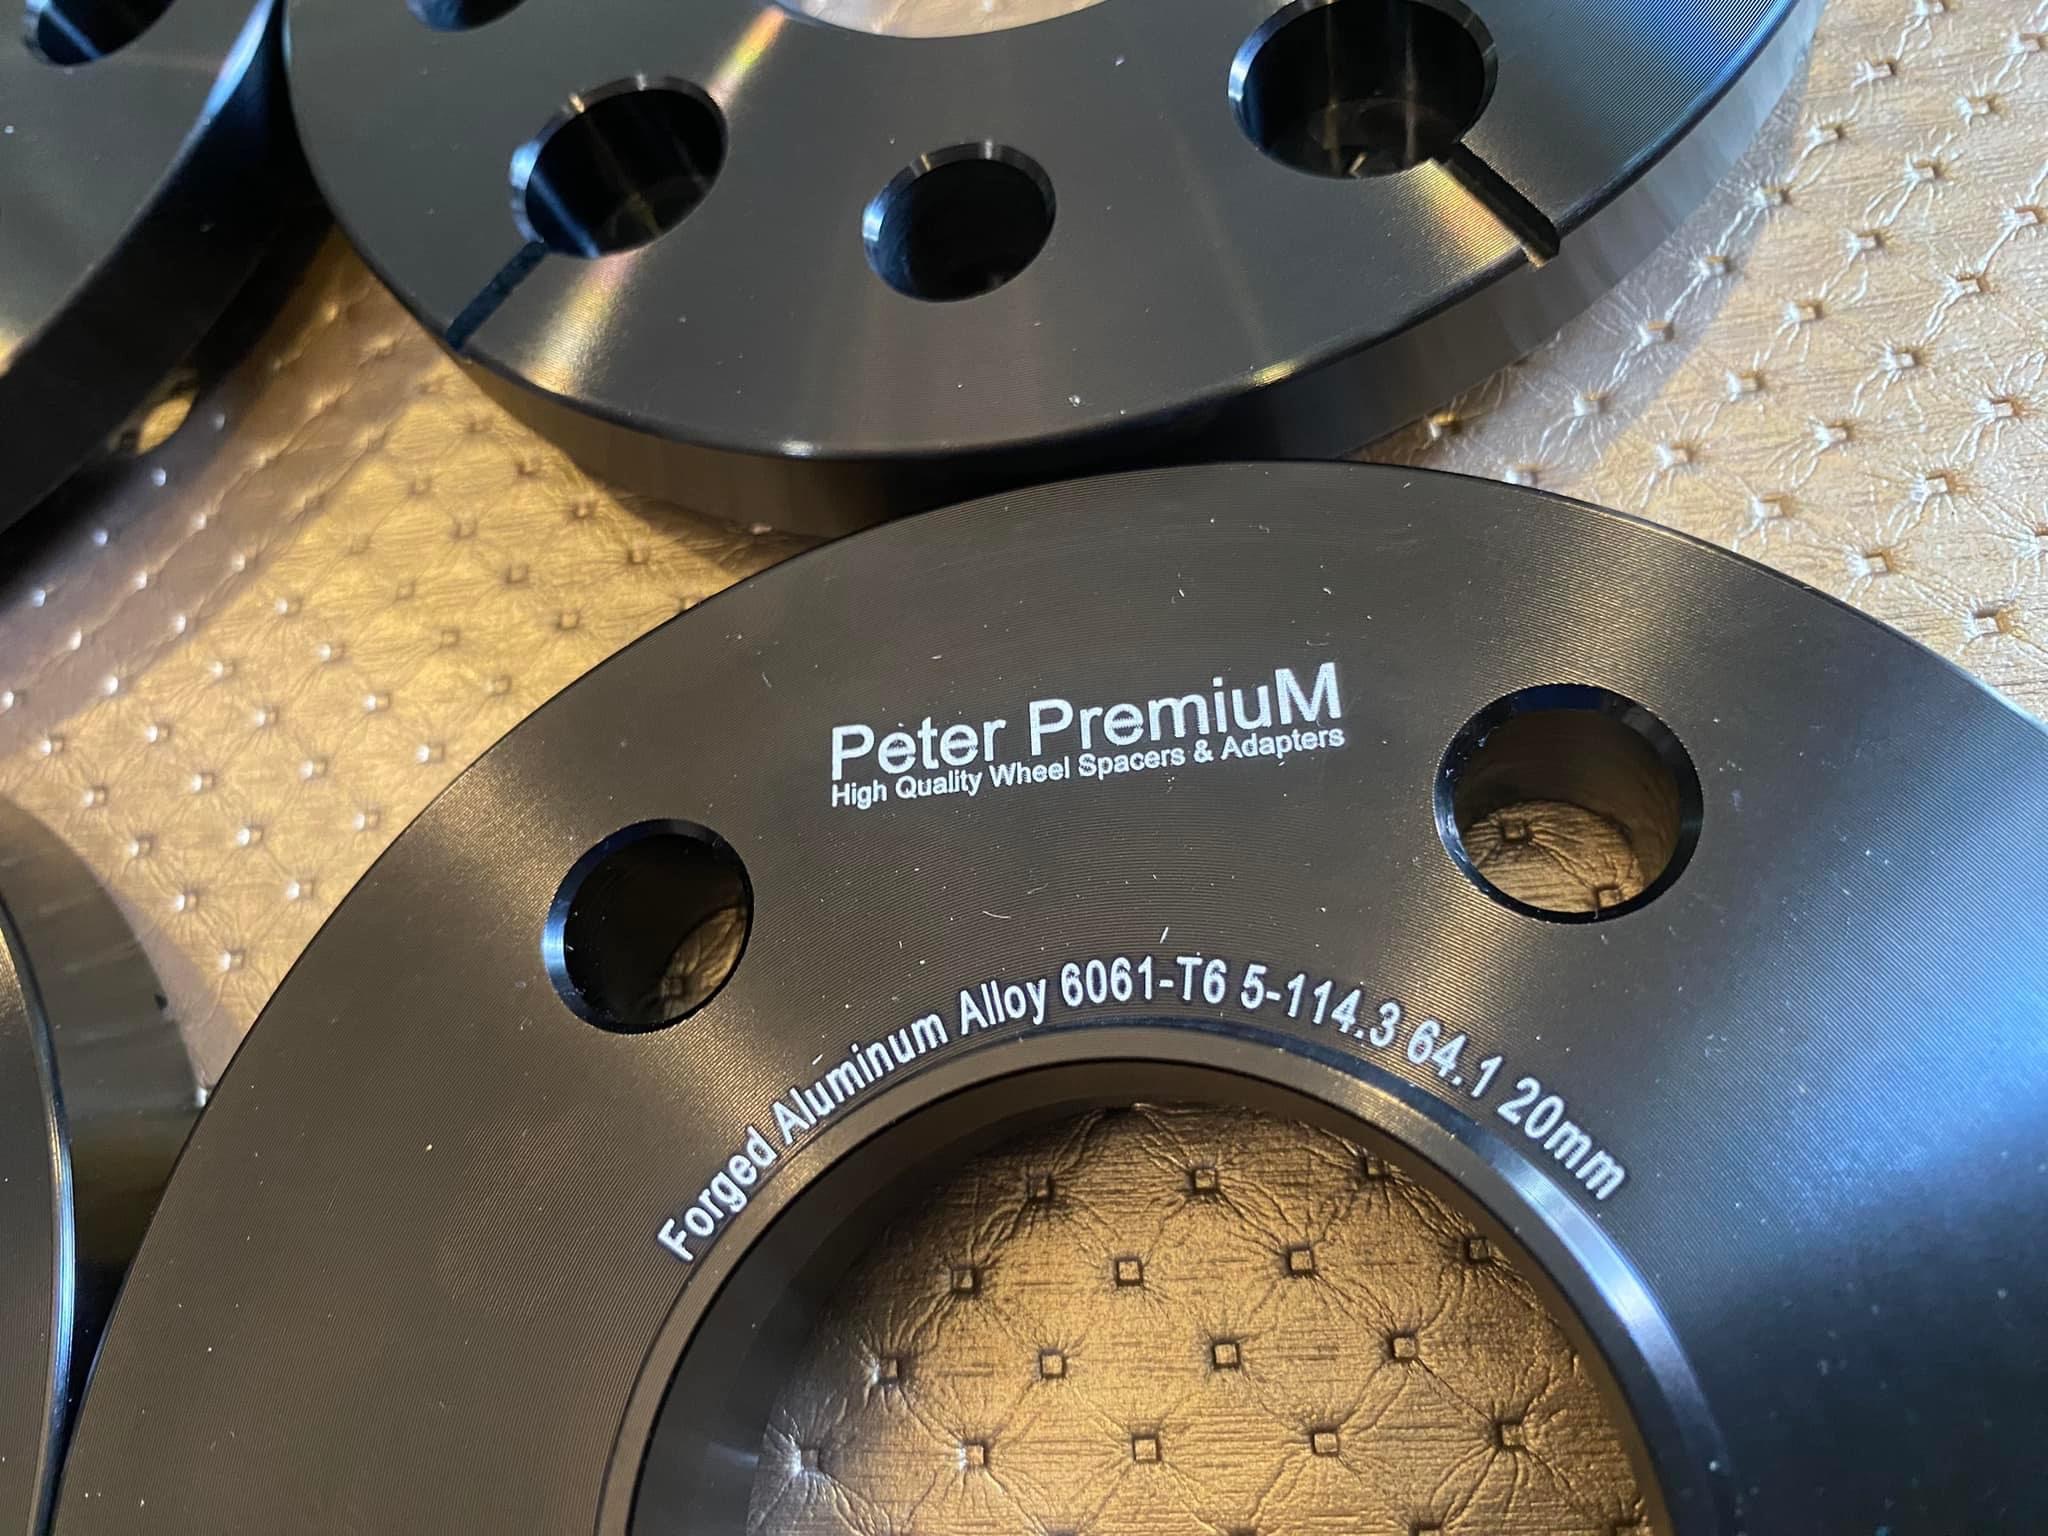 Peter PremiuM - Tesla wheel spacers (แก้ล้อหุบ) สำหรับ Tesla กับล้อ teslaแท้ โดยเฉพาะ